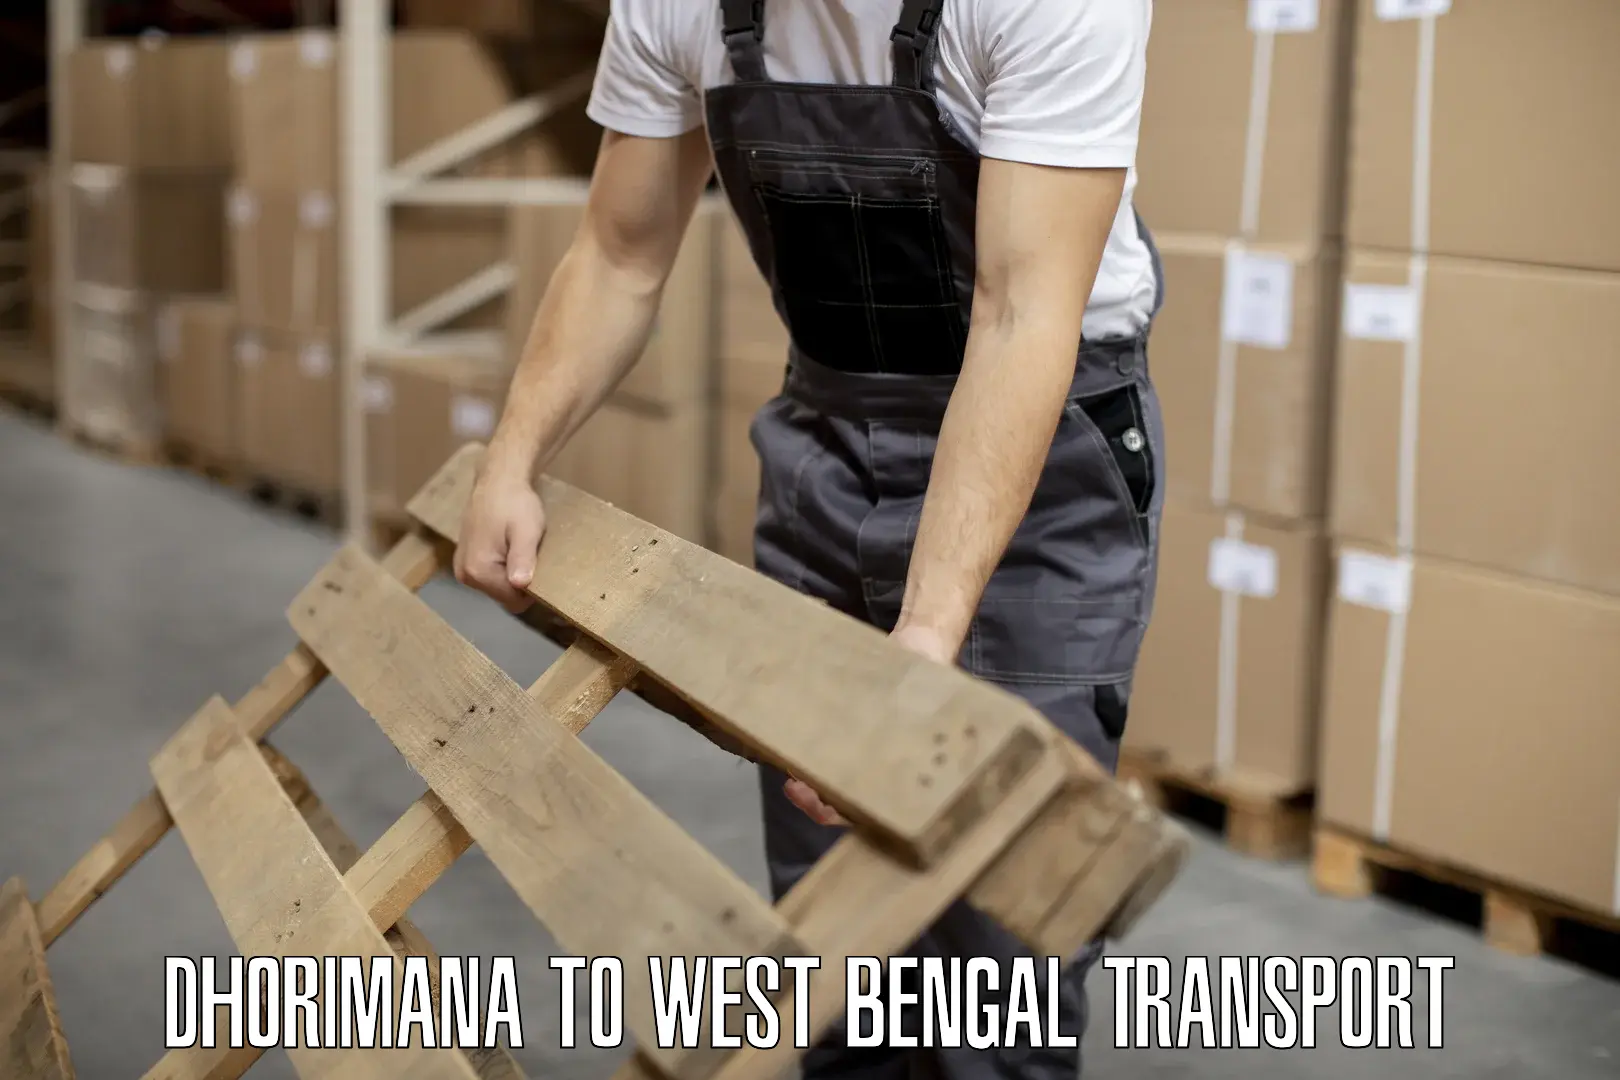 Delivery service Dhorimana to Badkulla